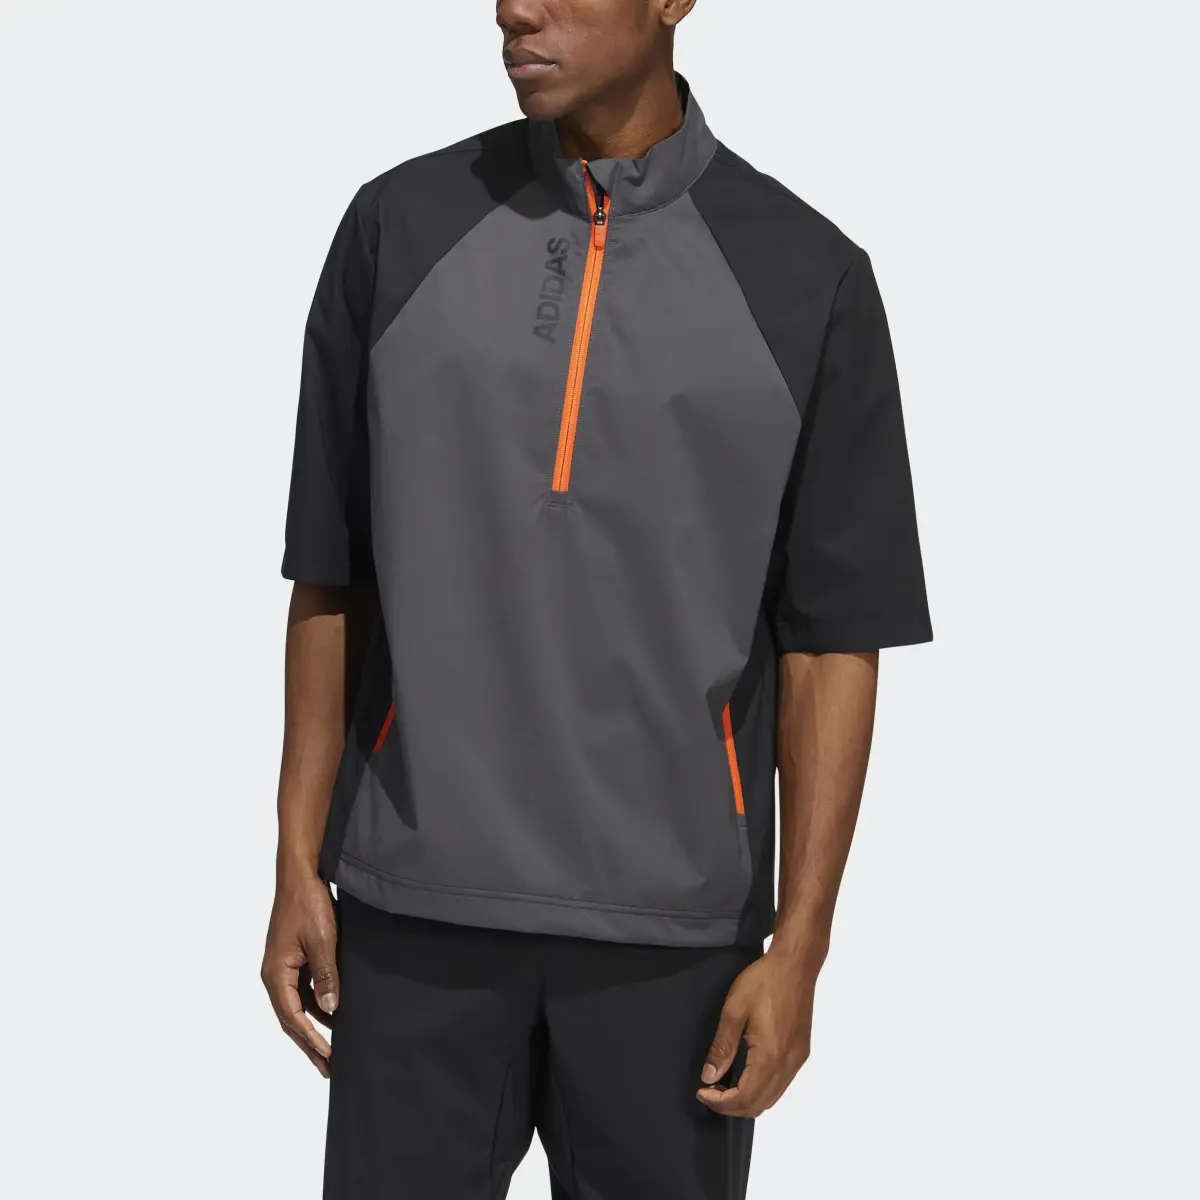 Adidas Provisional Short Sleeve Jacket. 1